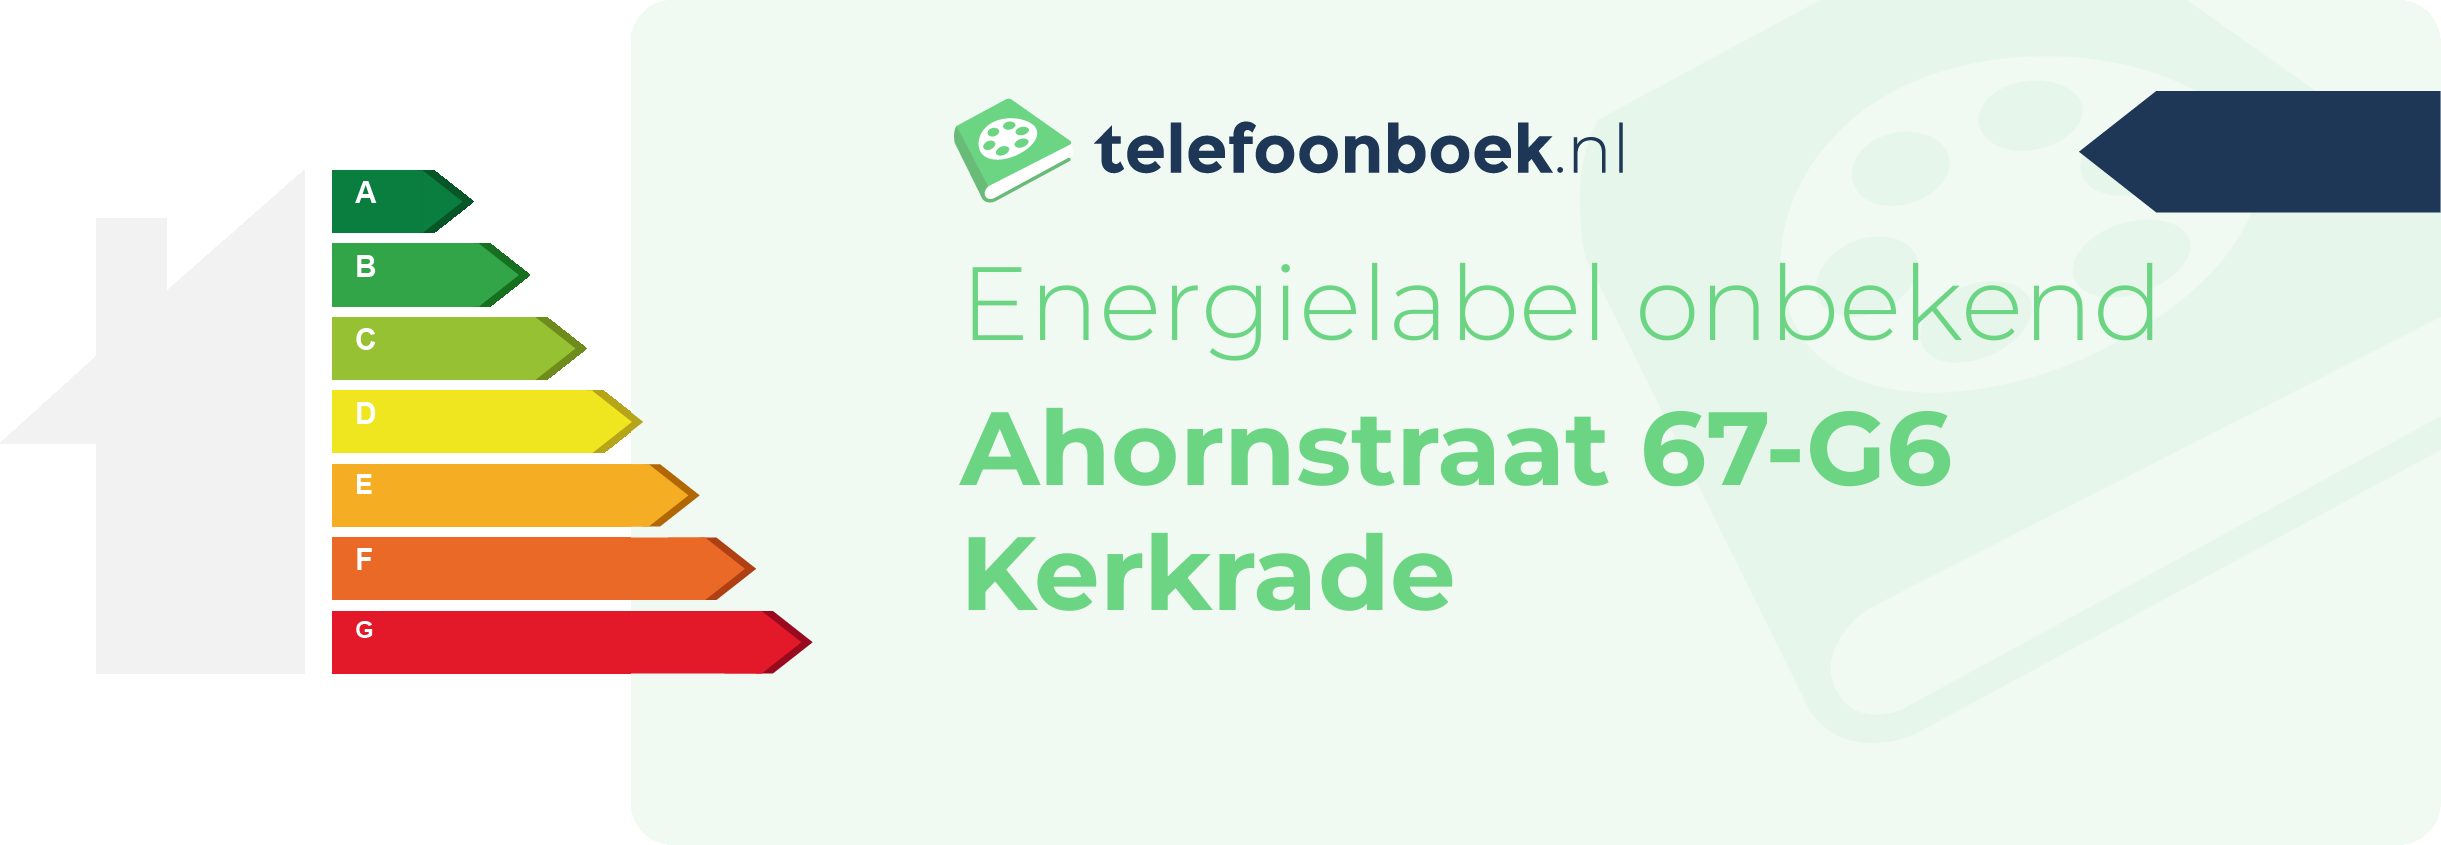 Energielabel Ahornstraat 67-G6 Kerkrade